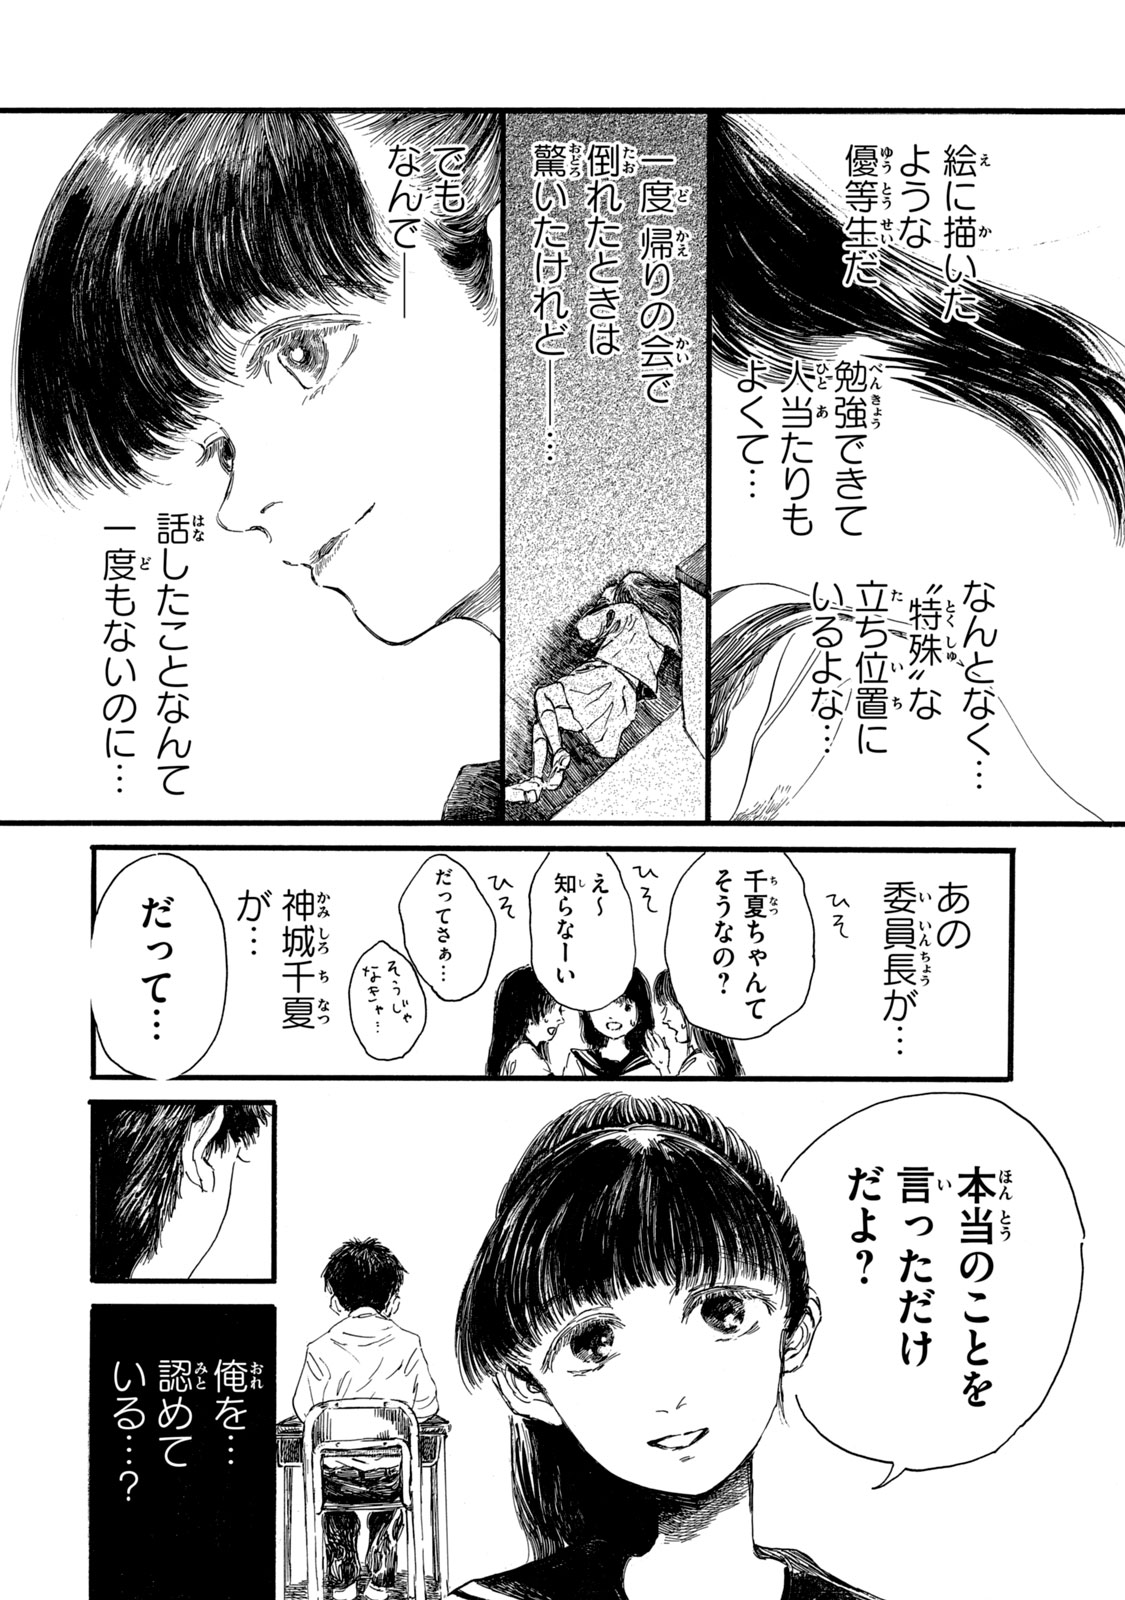 Watashi no Hara no Naka no Bakemono - Chapter 6 - Page 18